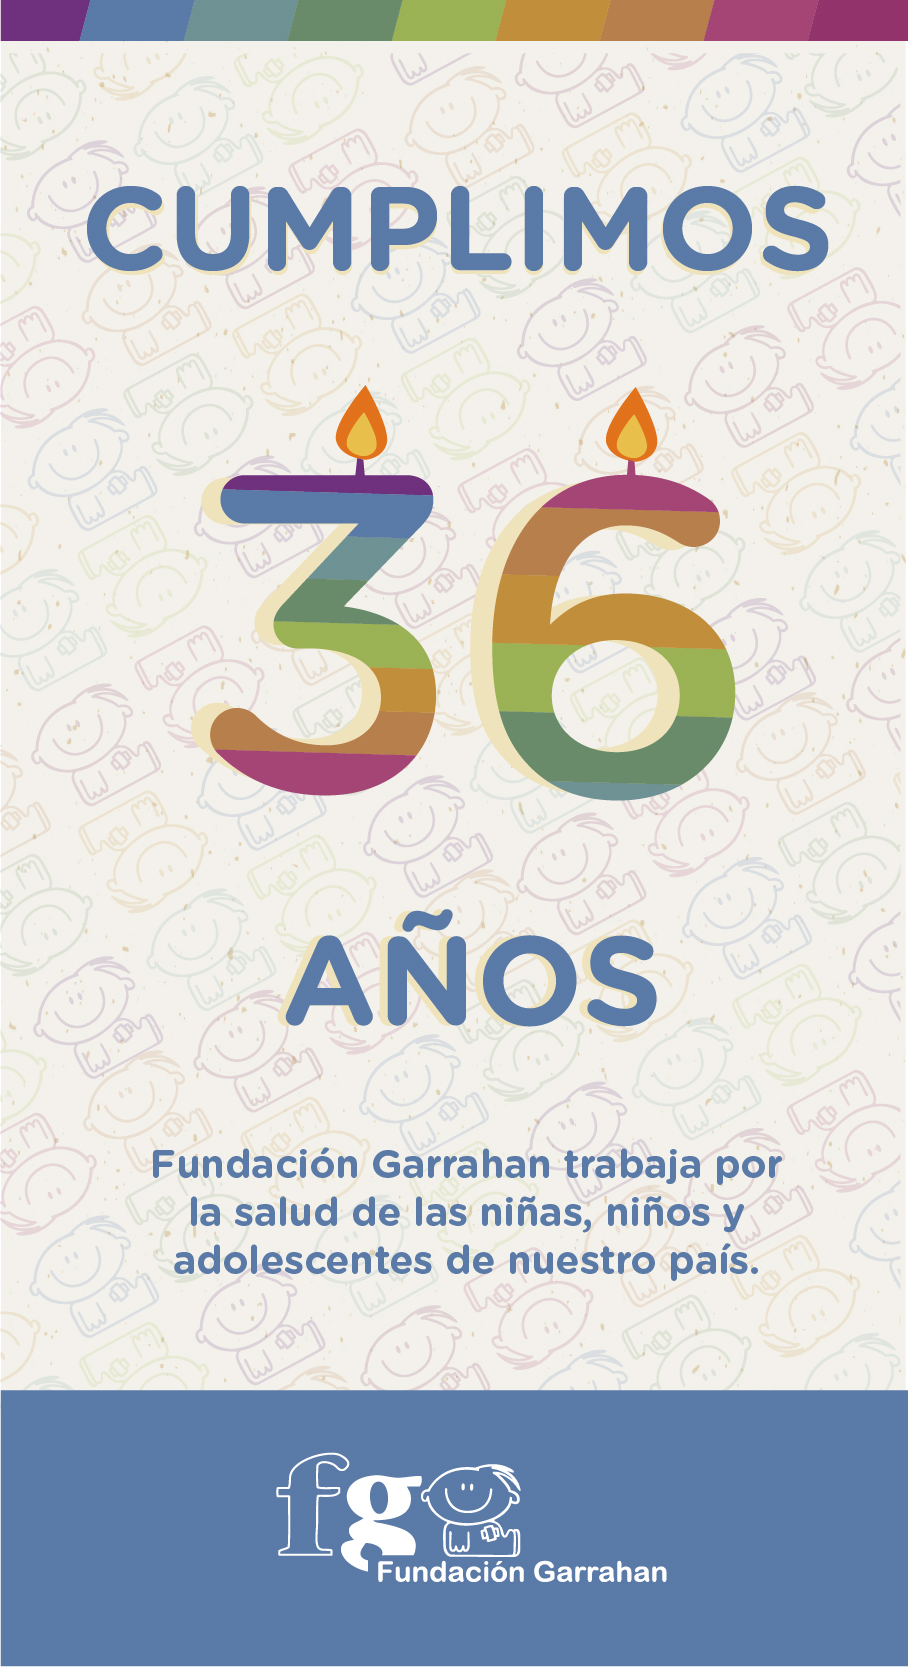 36º Aniversario de Fundación Garrahan